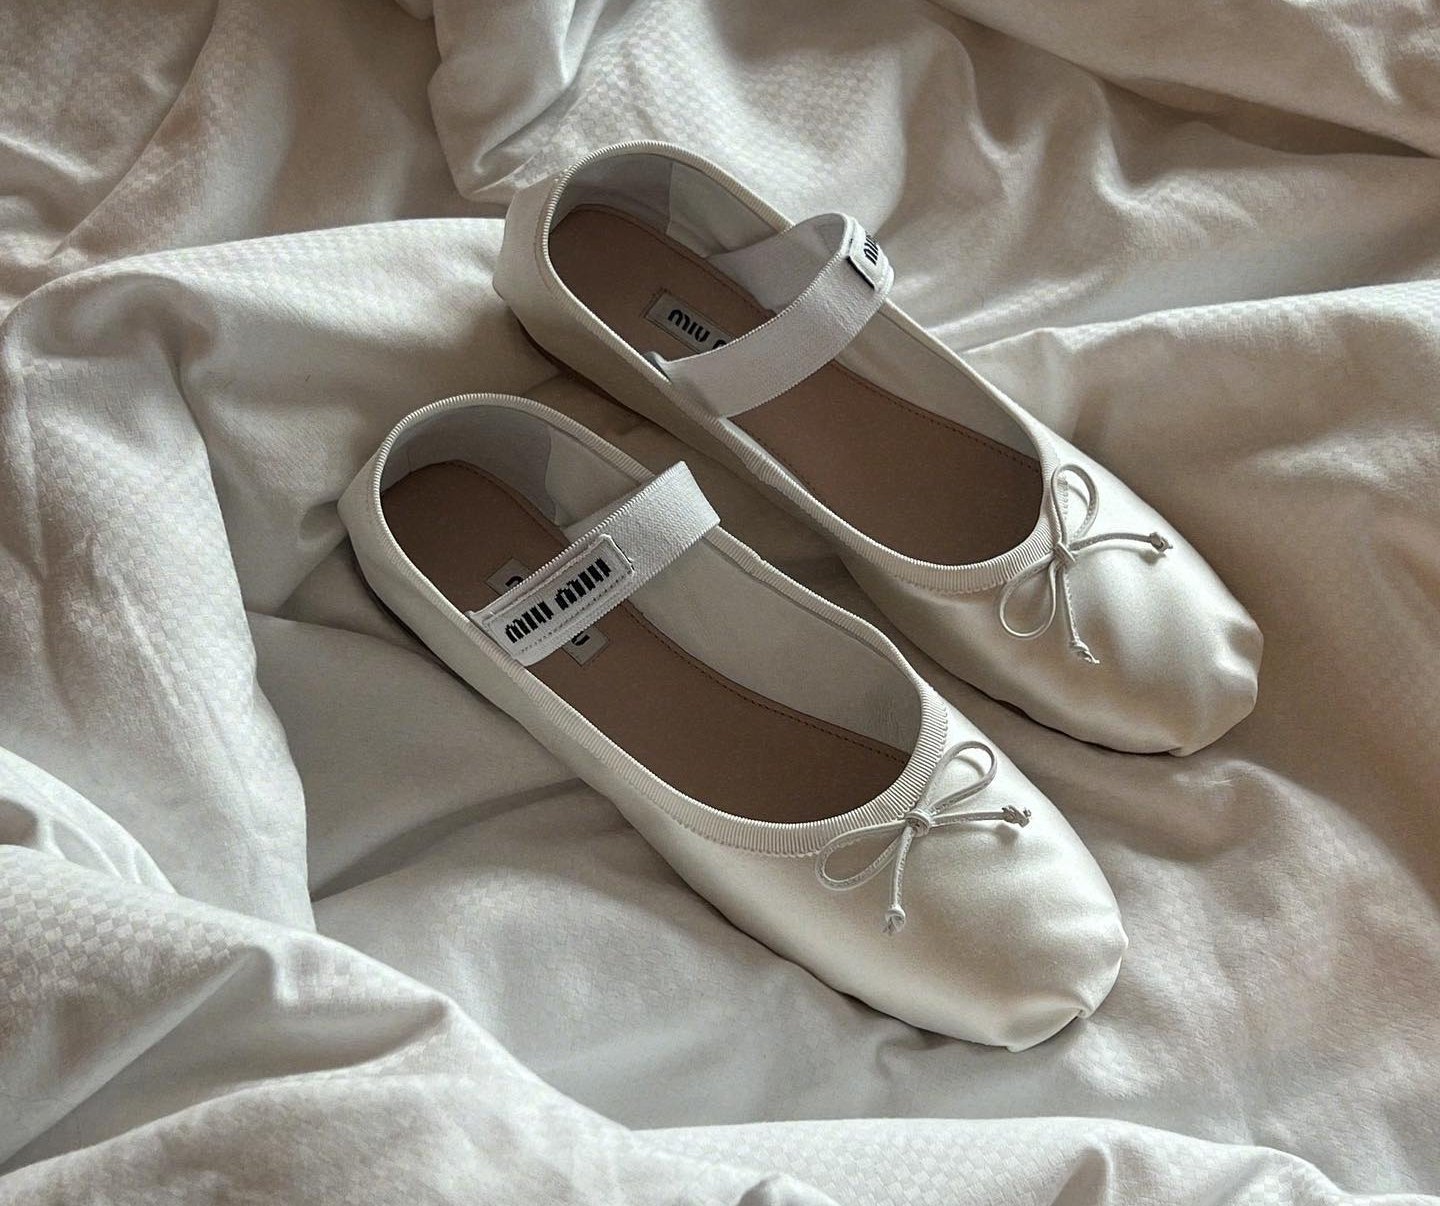 Moderni modeli ravnih cipela za vjenčanje u koje ćete se zaljubiti